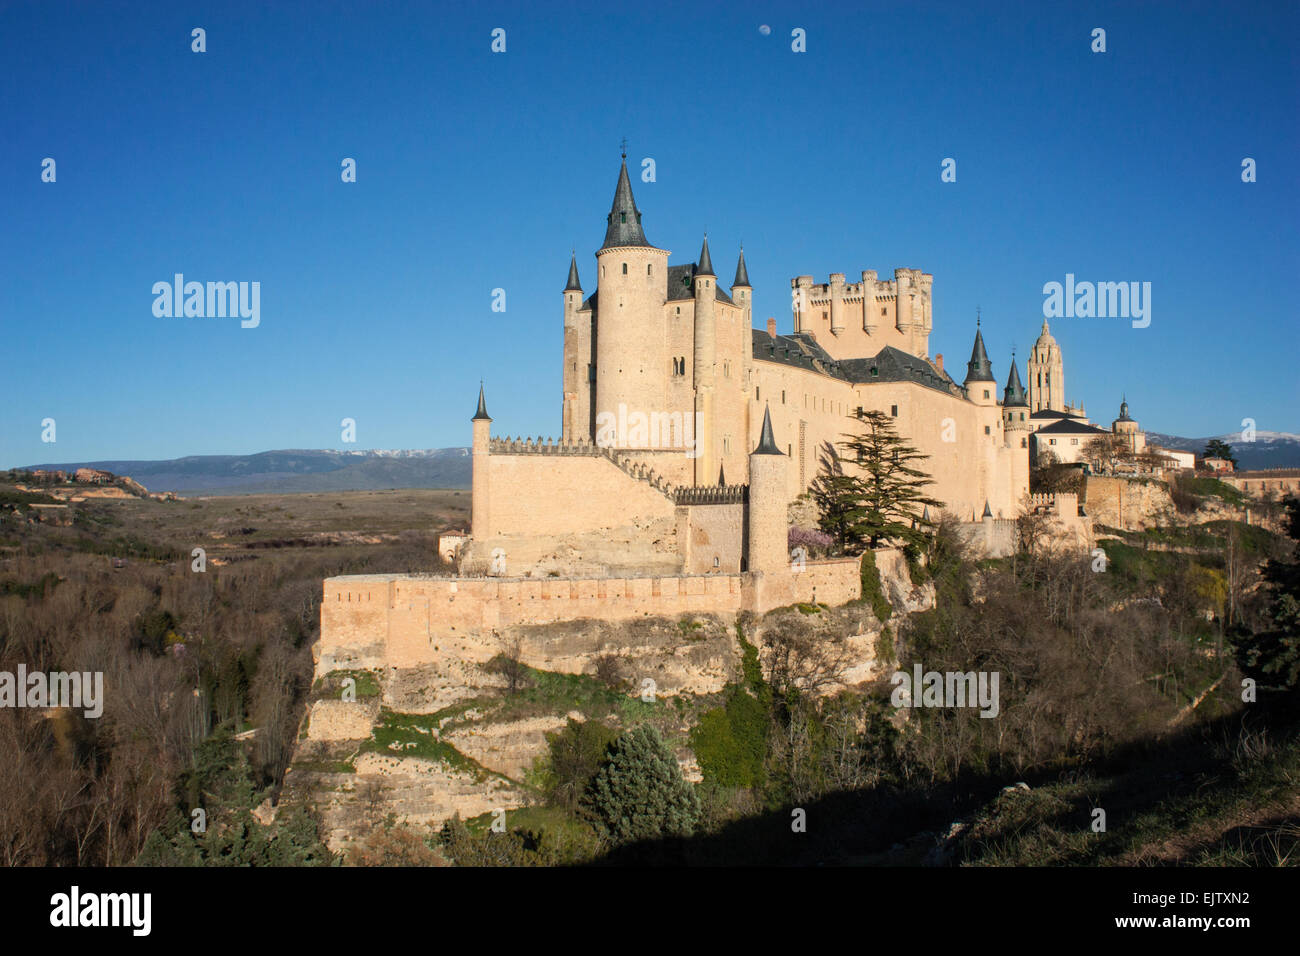 Beau château médiéval en pierre au-dessus de roches avec des montagnes en arrière-plan. Un ciel bleu avec la lune et entouré par de Banque D'Images